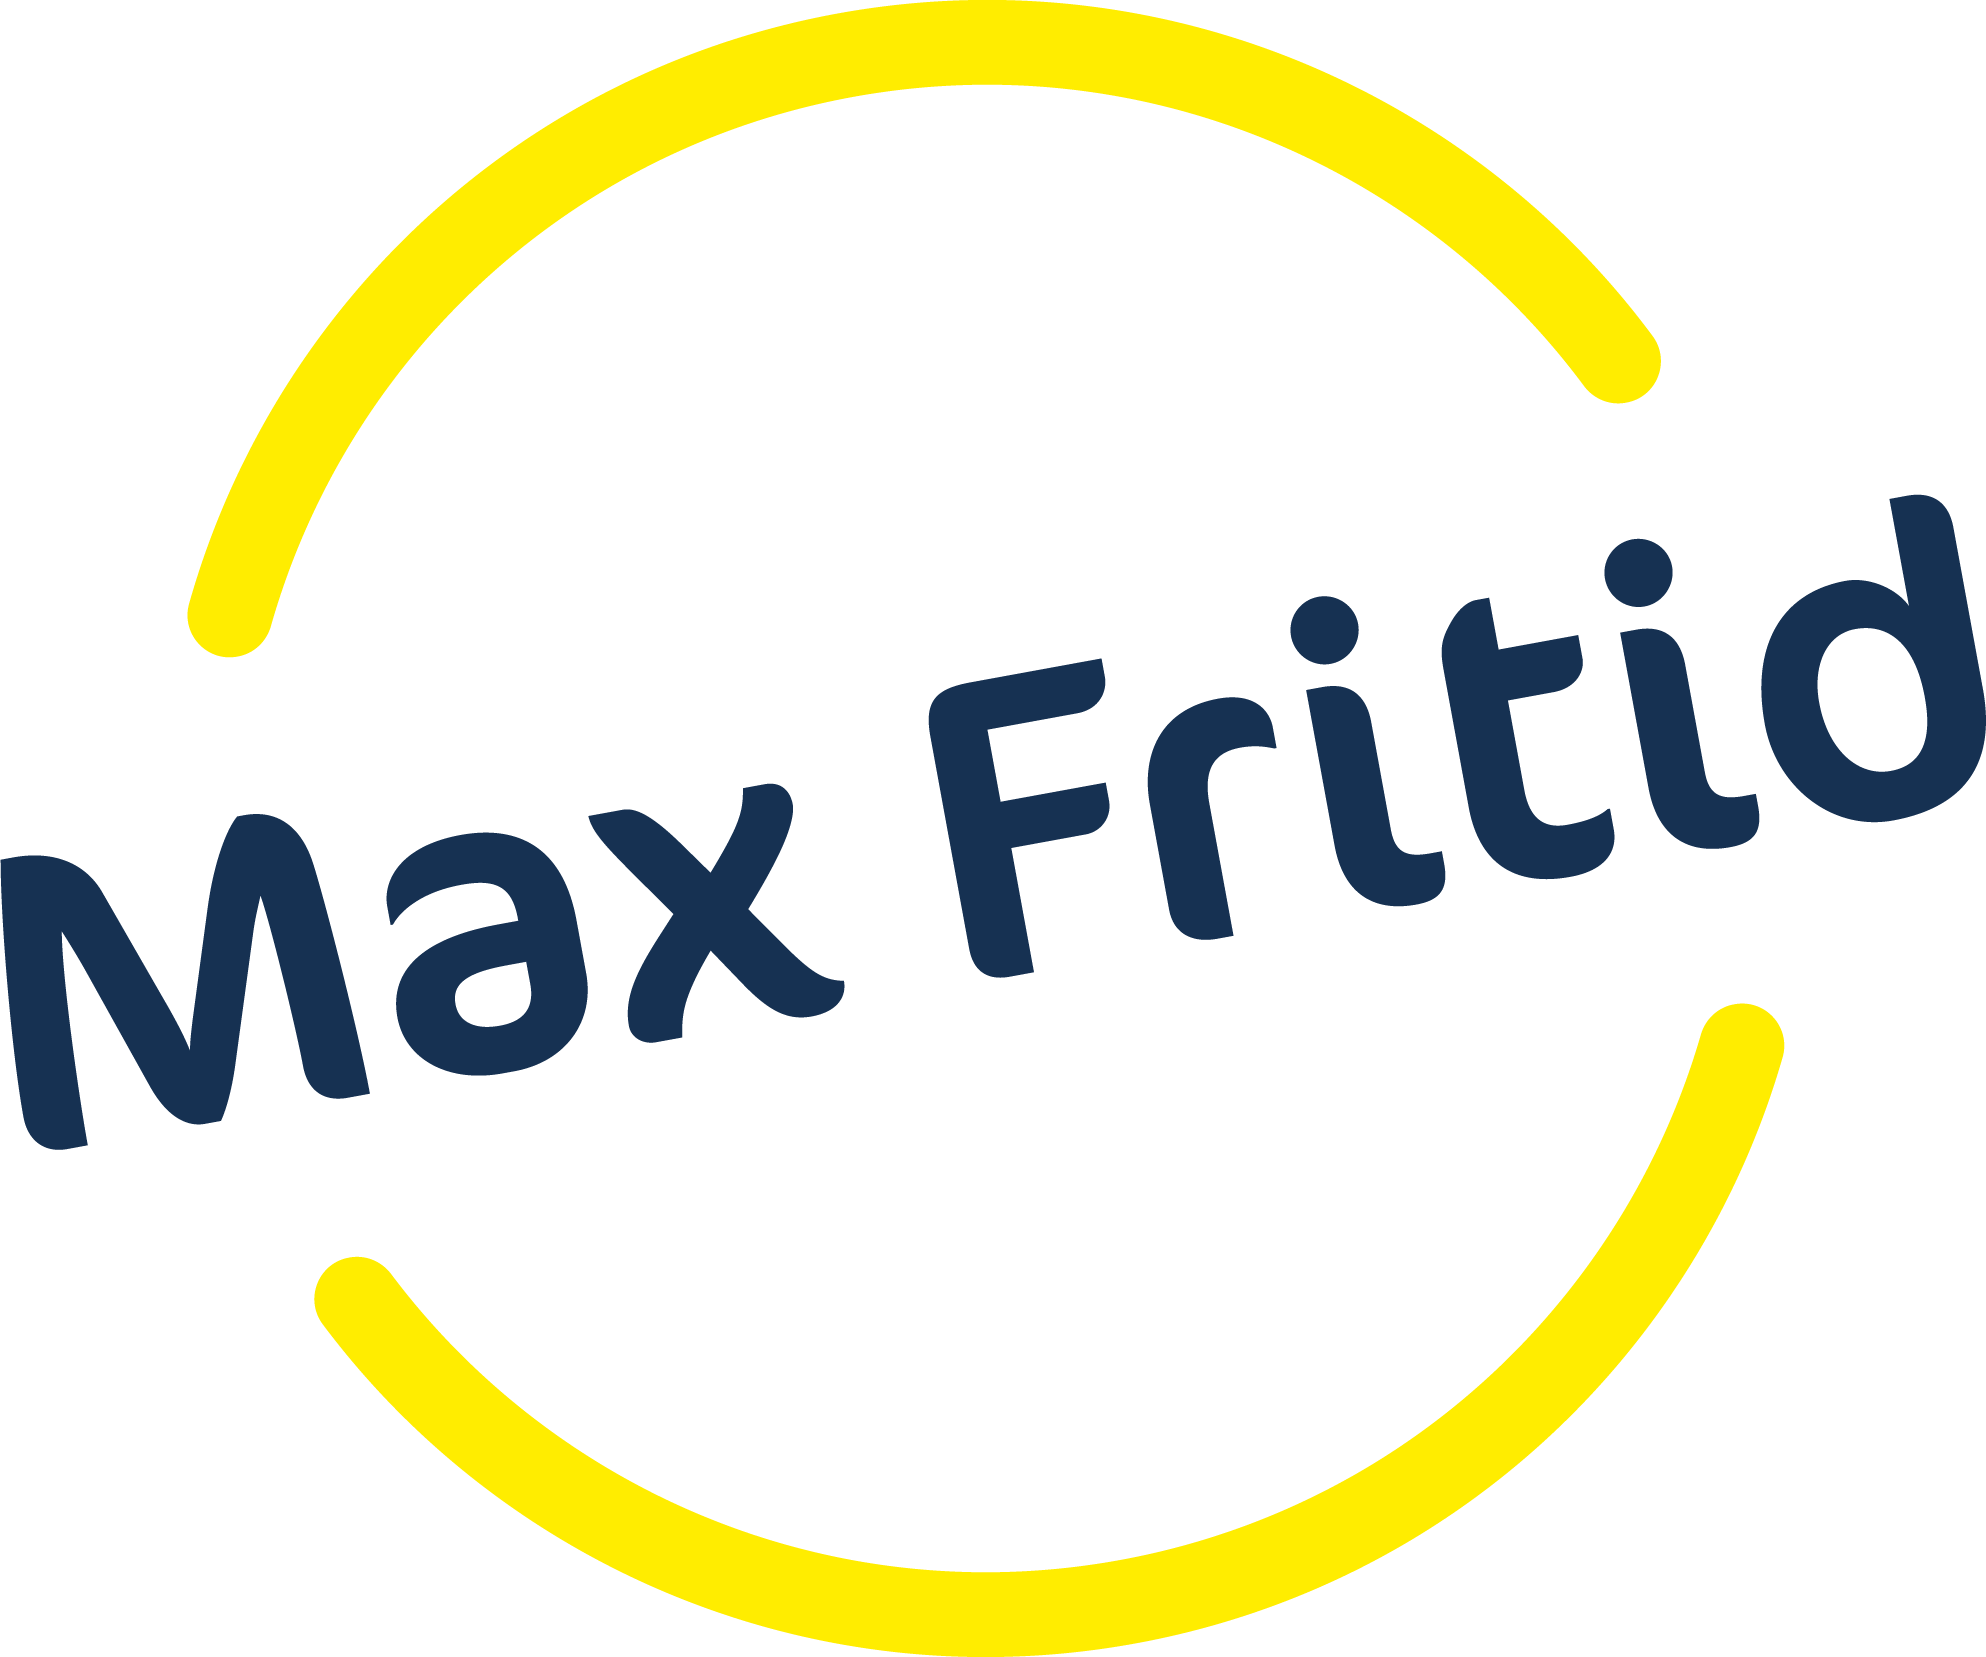 Max Fritid